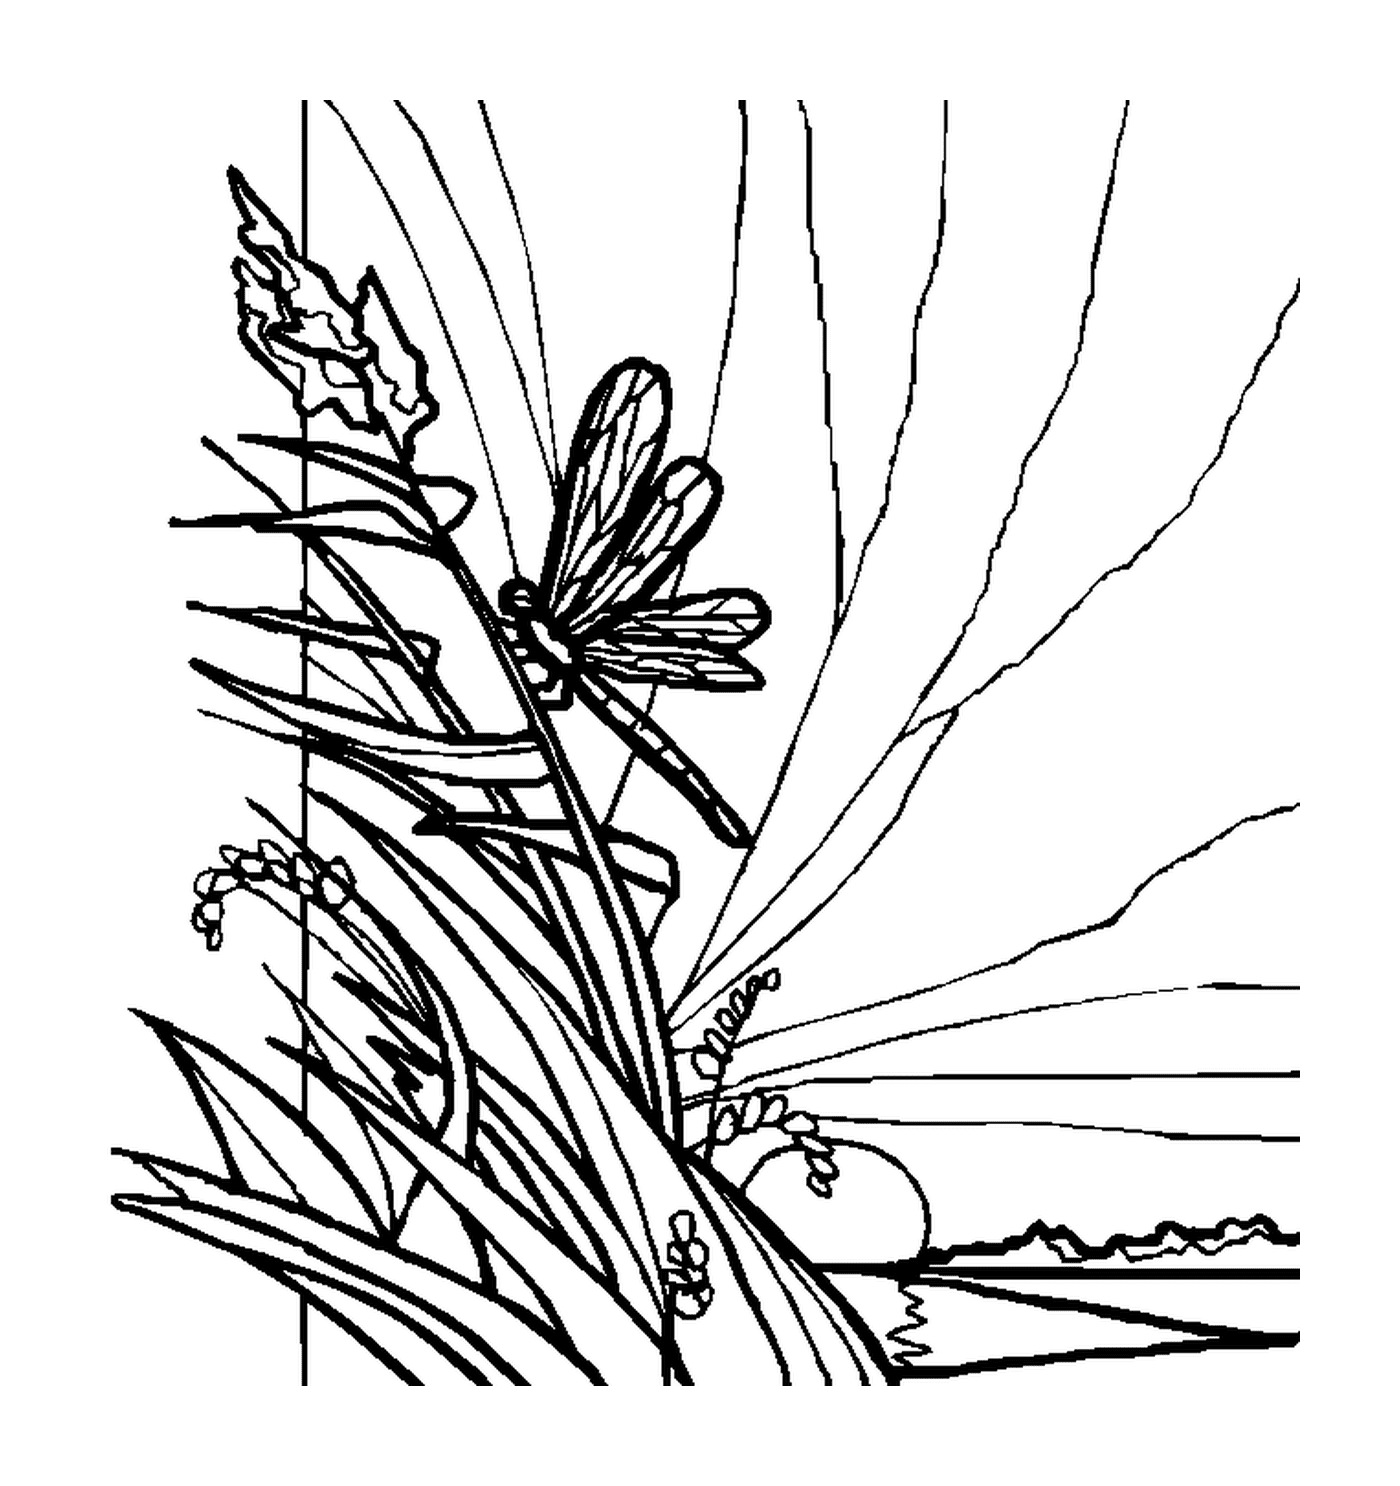  Eine Libelle auf der Vegetation platziert 